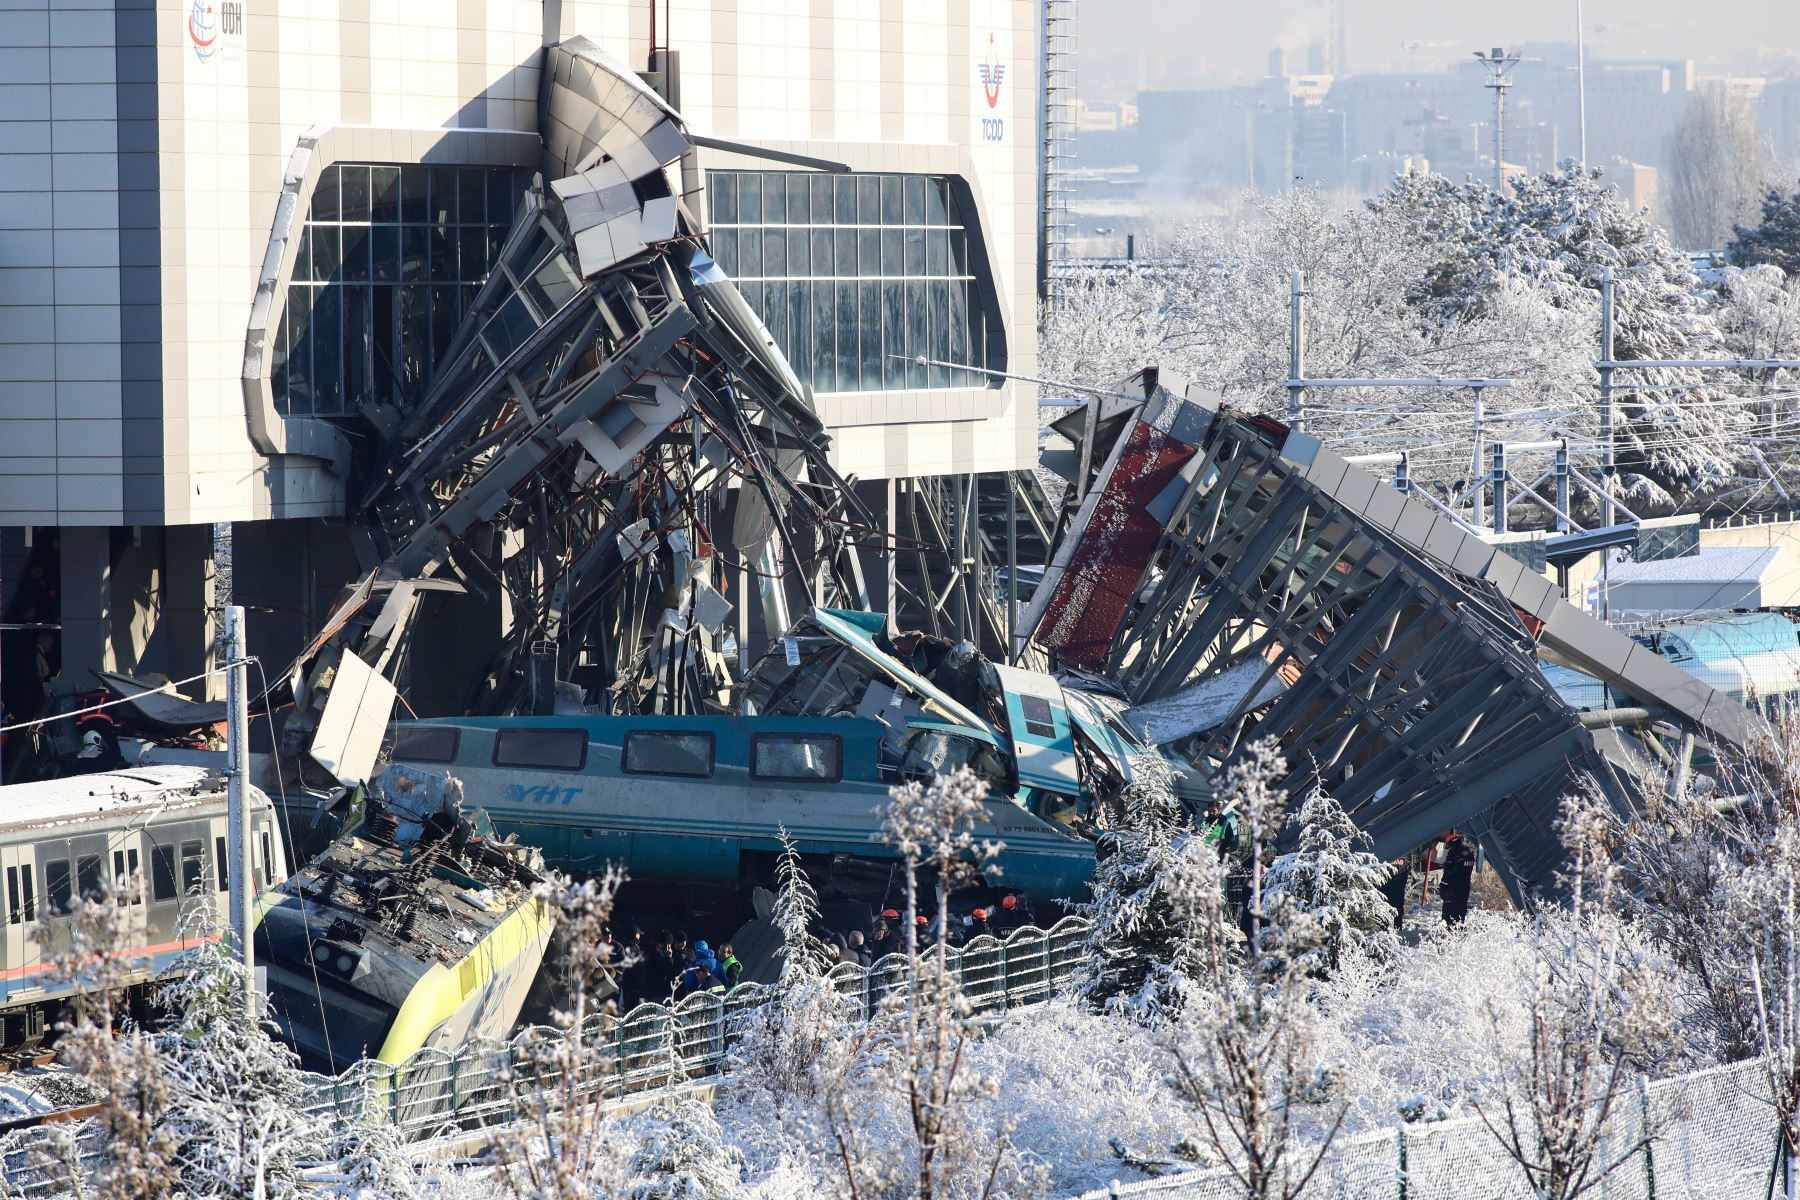 Bomberos y médicos intentan rescatar a las víctimas después de que un tren de alta velocidad se estrellara contra una locomotora en Ankara, el 13 de diciembre de 2018. - Nueve personas murieron y casi 50 resultaron heridas en este accidente ferroviario. AFP